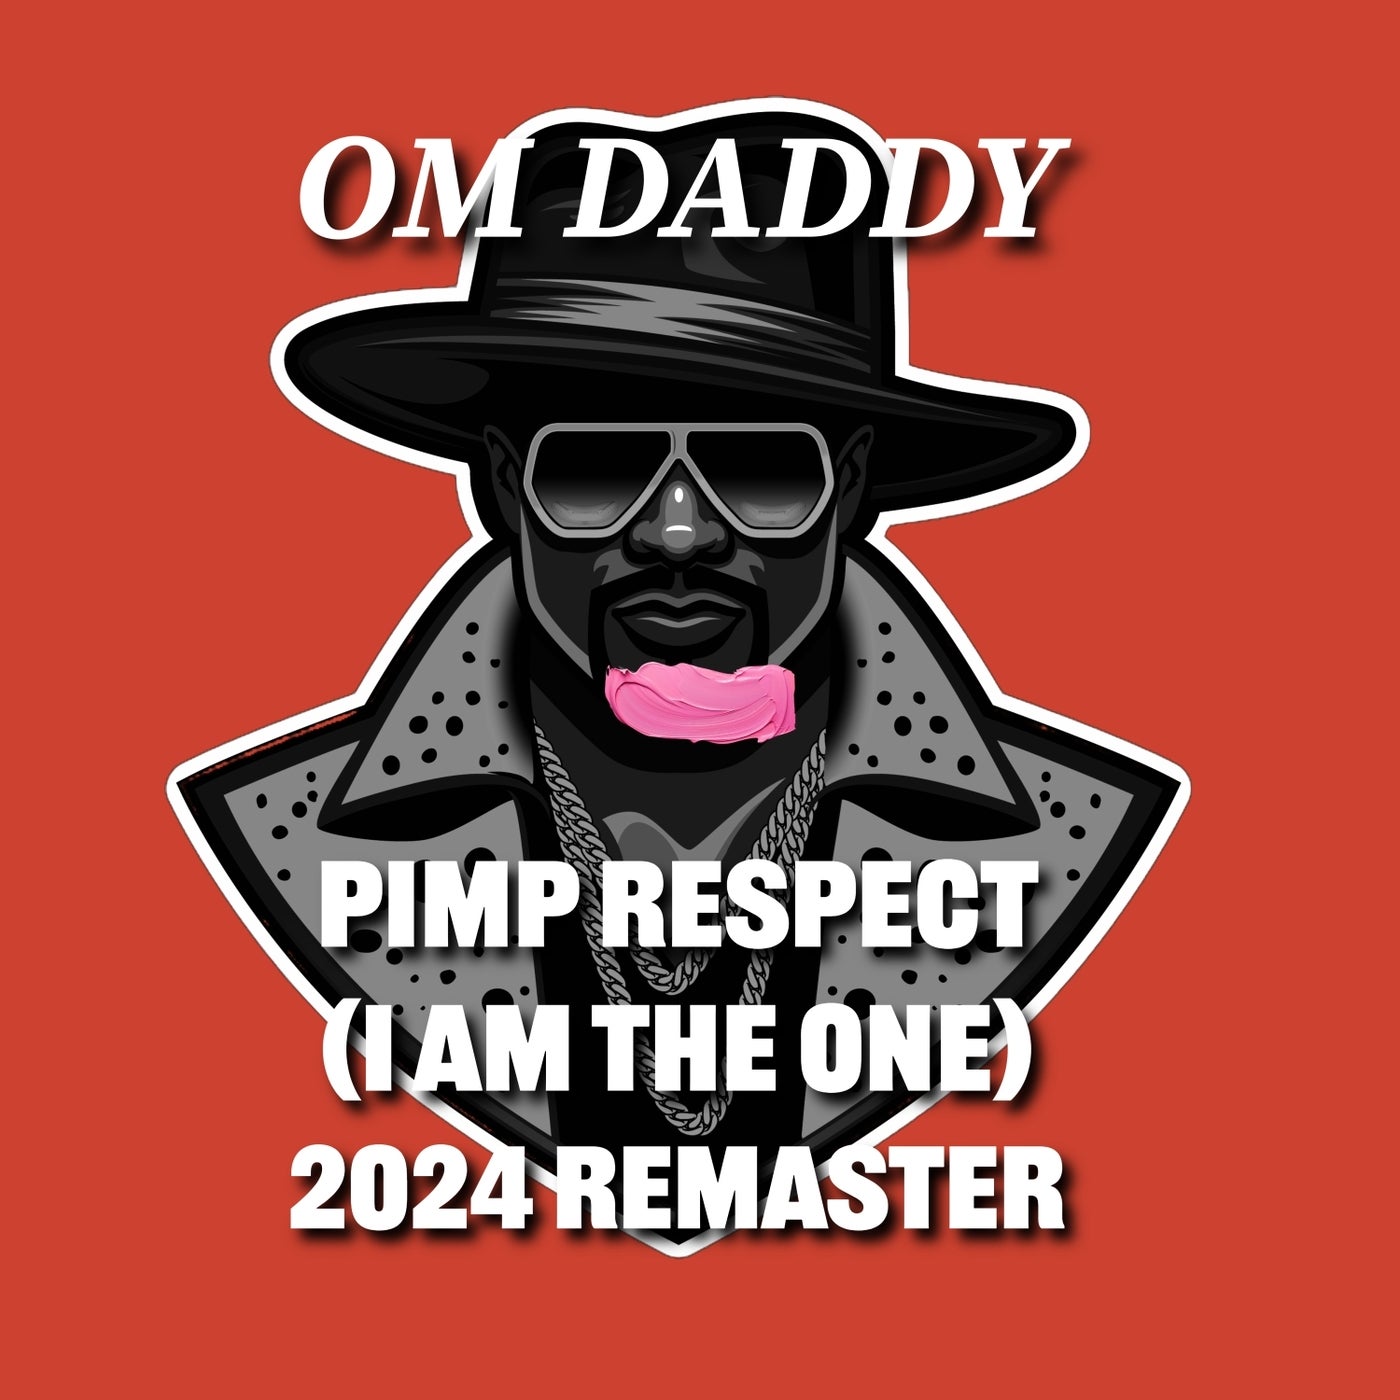 Pimp Respect (I Am the One)